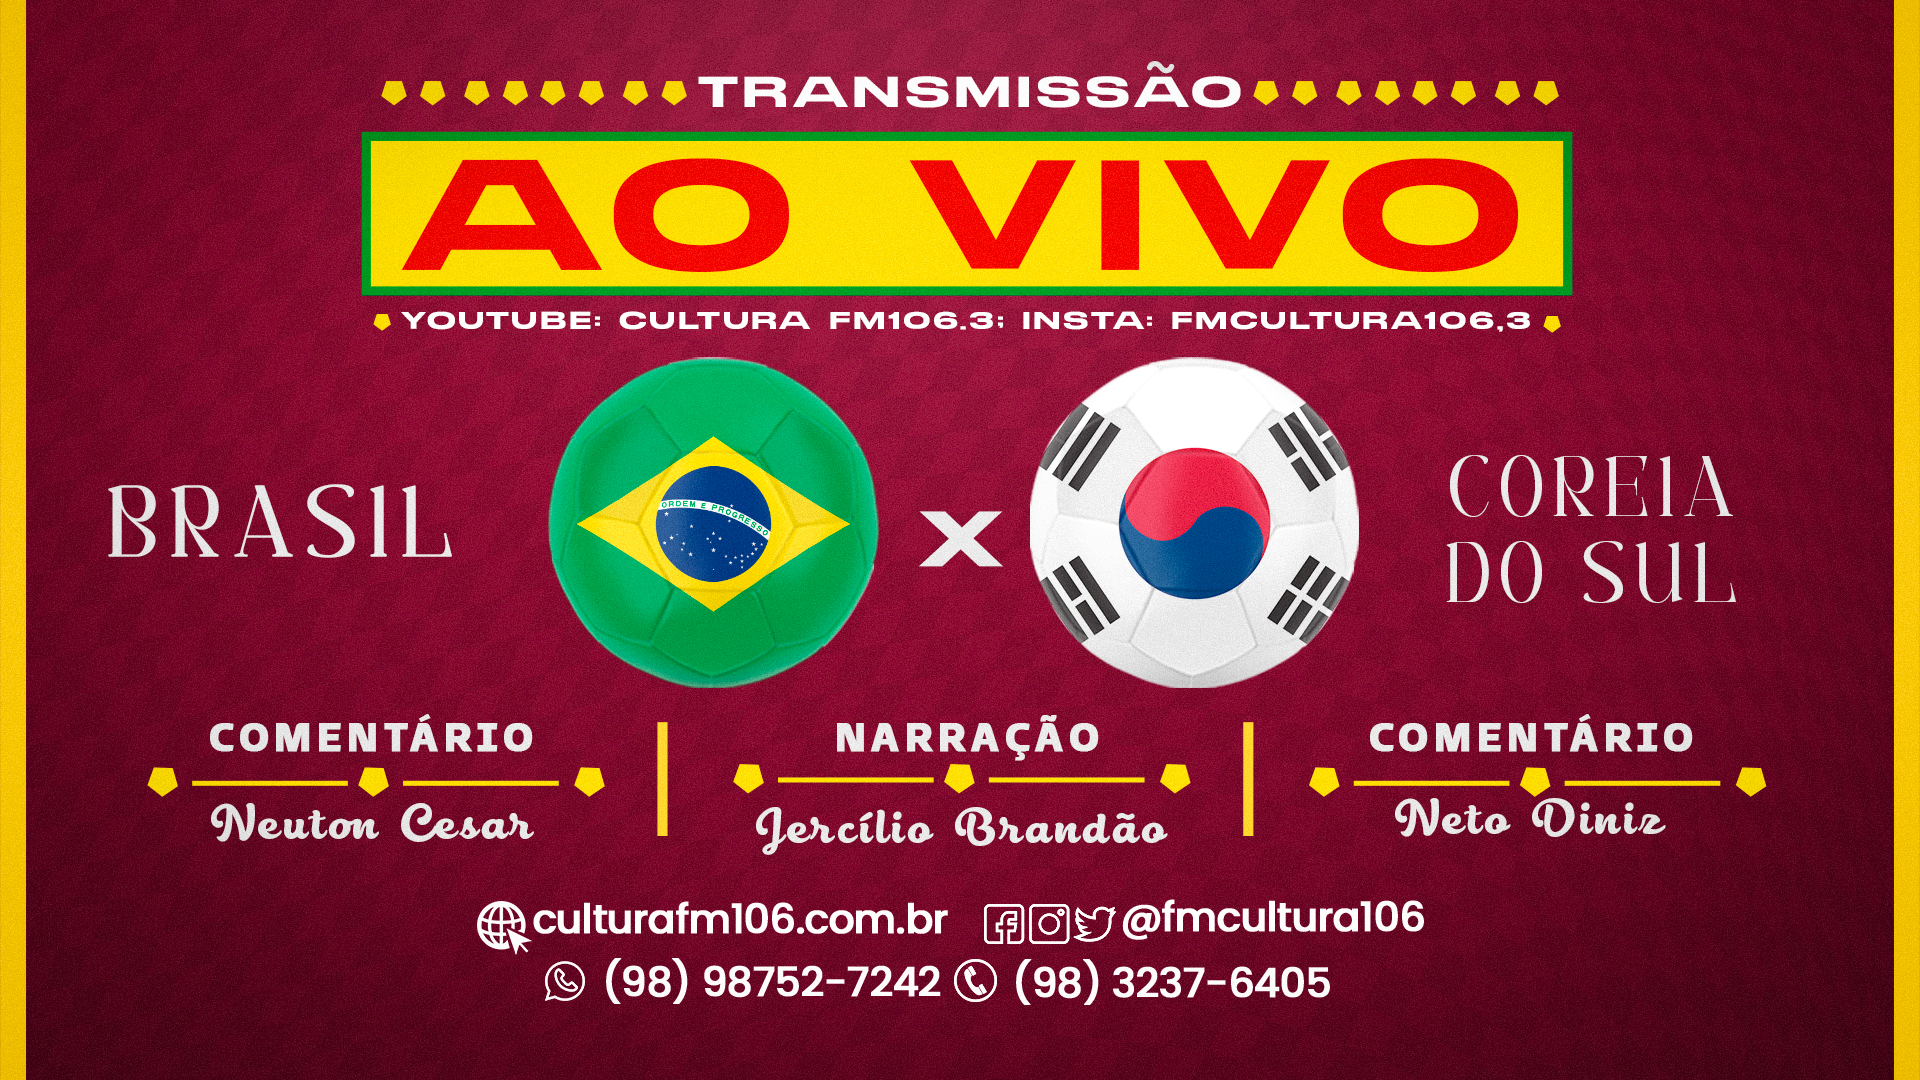 Copa do Mundo: Brasil vs Coreia do Sul, nesta segunda (05), a partir das 16h00